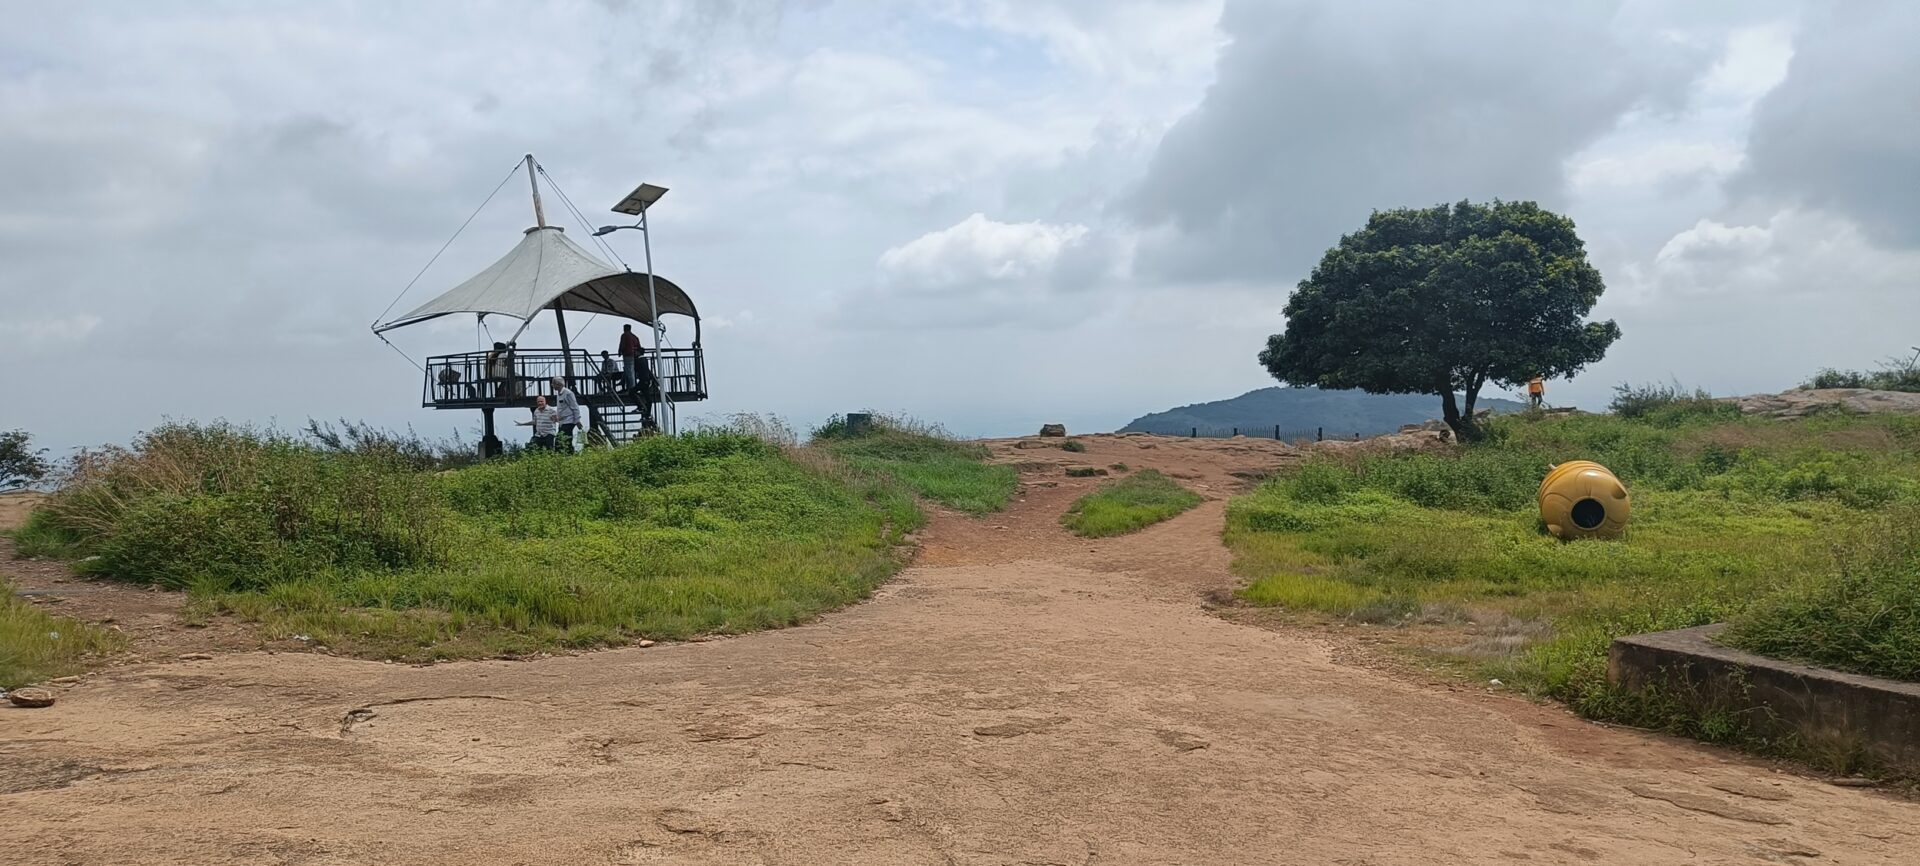 Nandi hills place to visit near Bengaluru